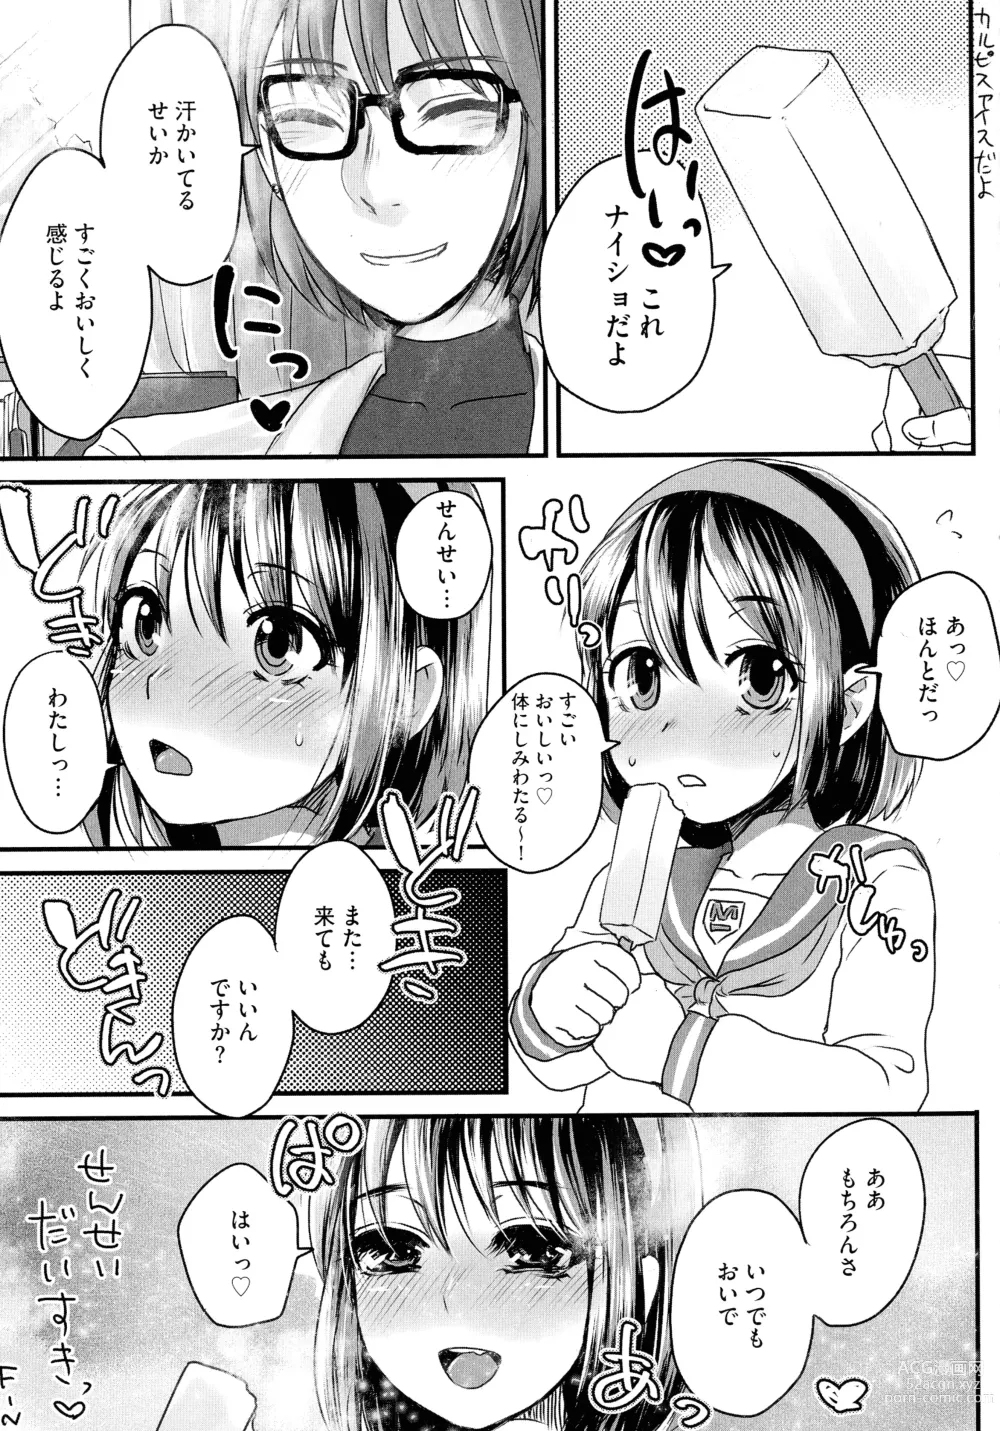 Page 189 of manga Subetega Mesu ni Naru